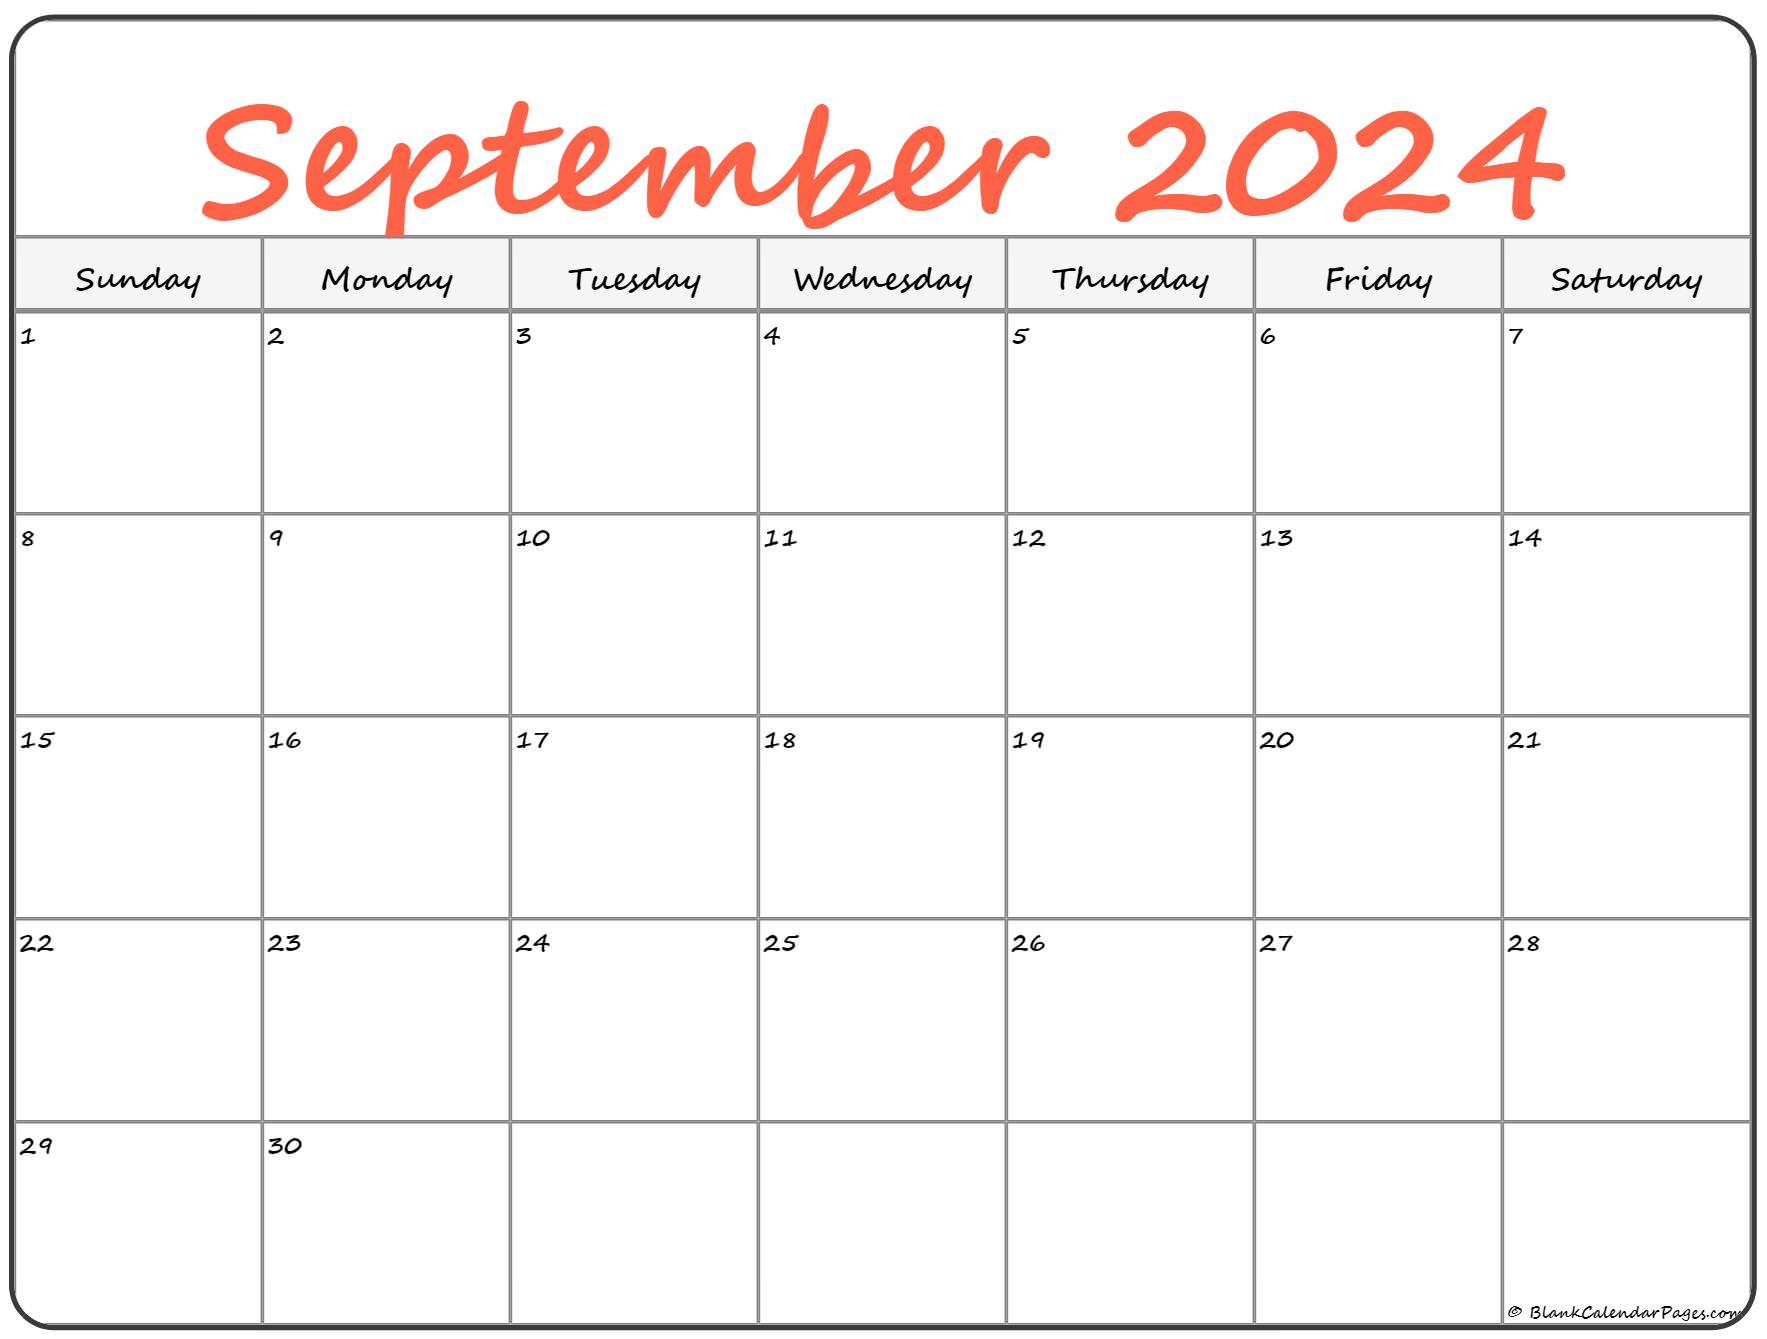 Free Printable September 2022 Calendar September 2022 Calendar | Free Printable Calendar Templates